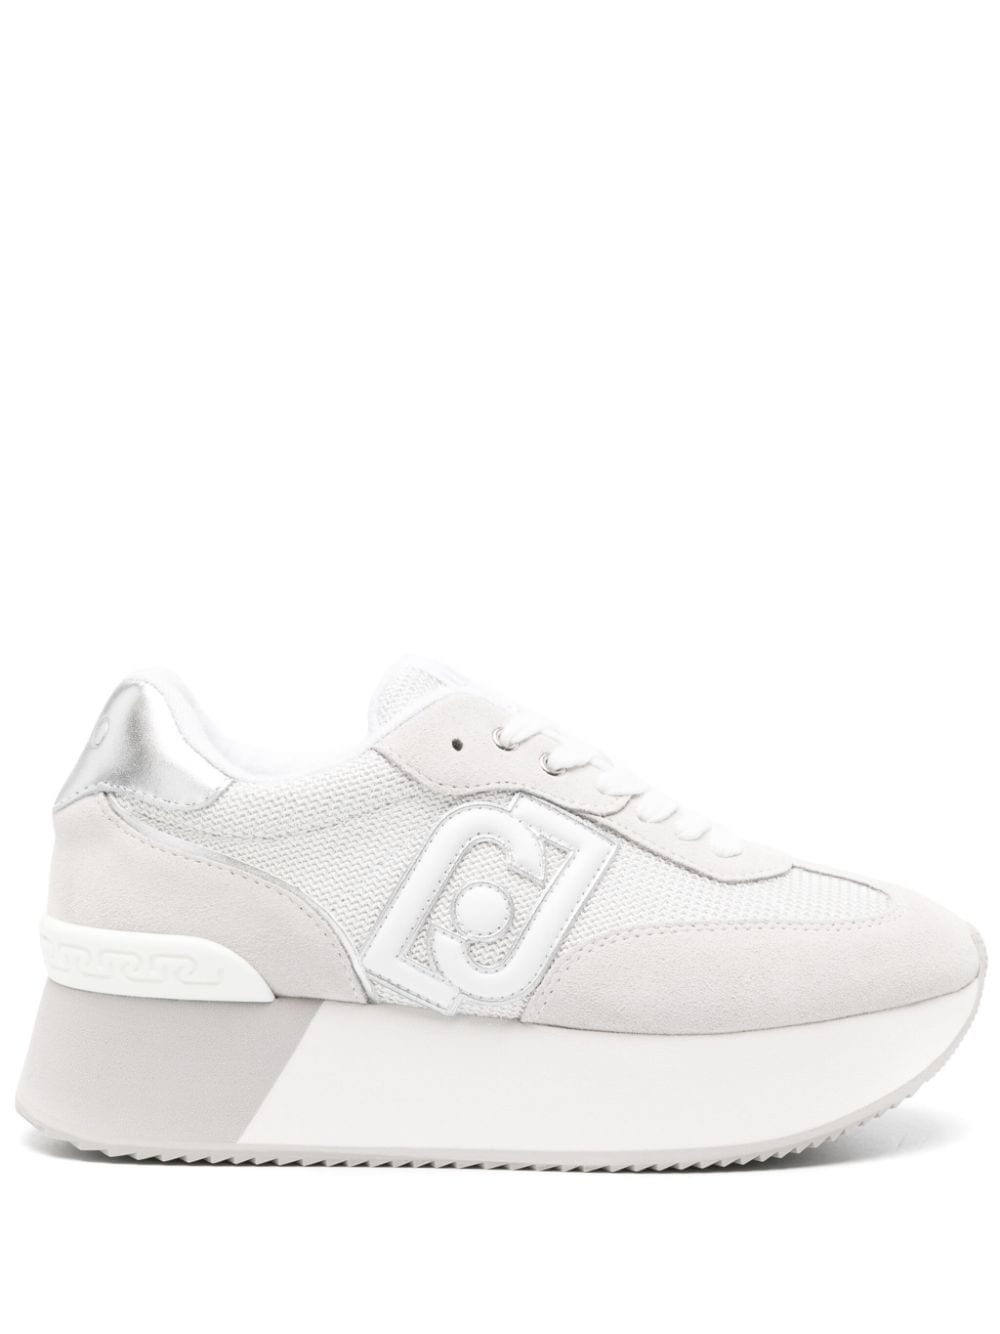 Liu •jo Dreamy Mesh Sneakers In White